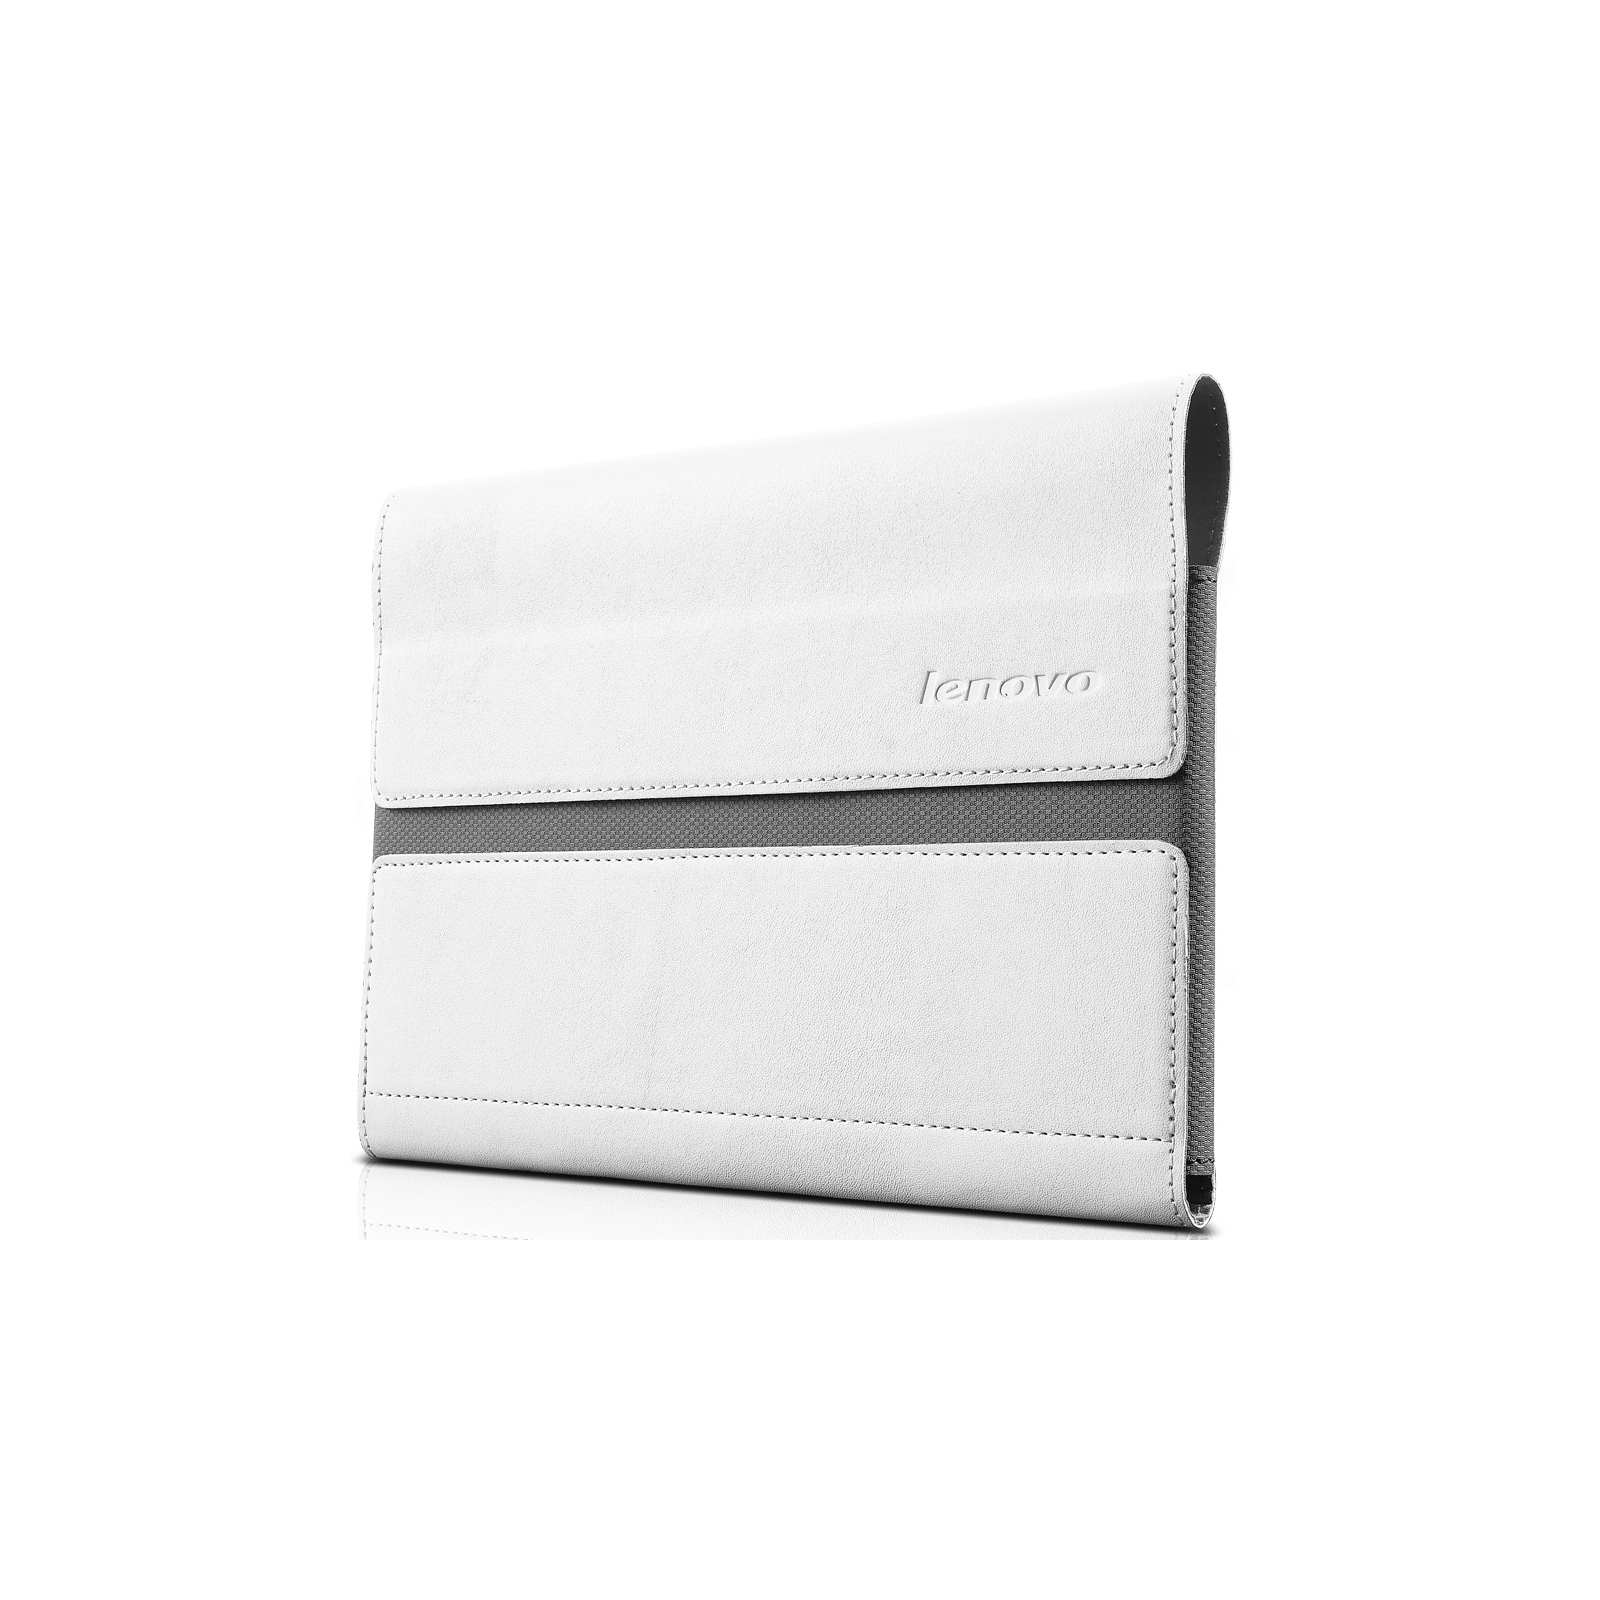 Чехол для планшета Lenovo 8' B6000 Yoga Tablet, Sleeve and Film White (888015971)